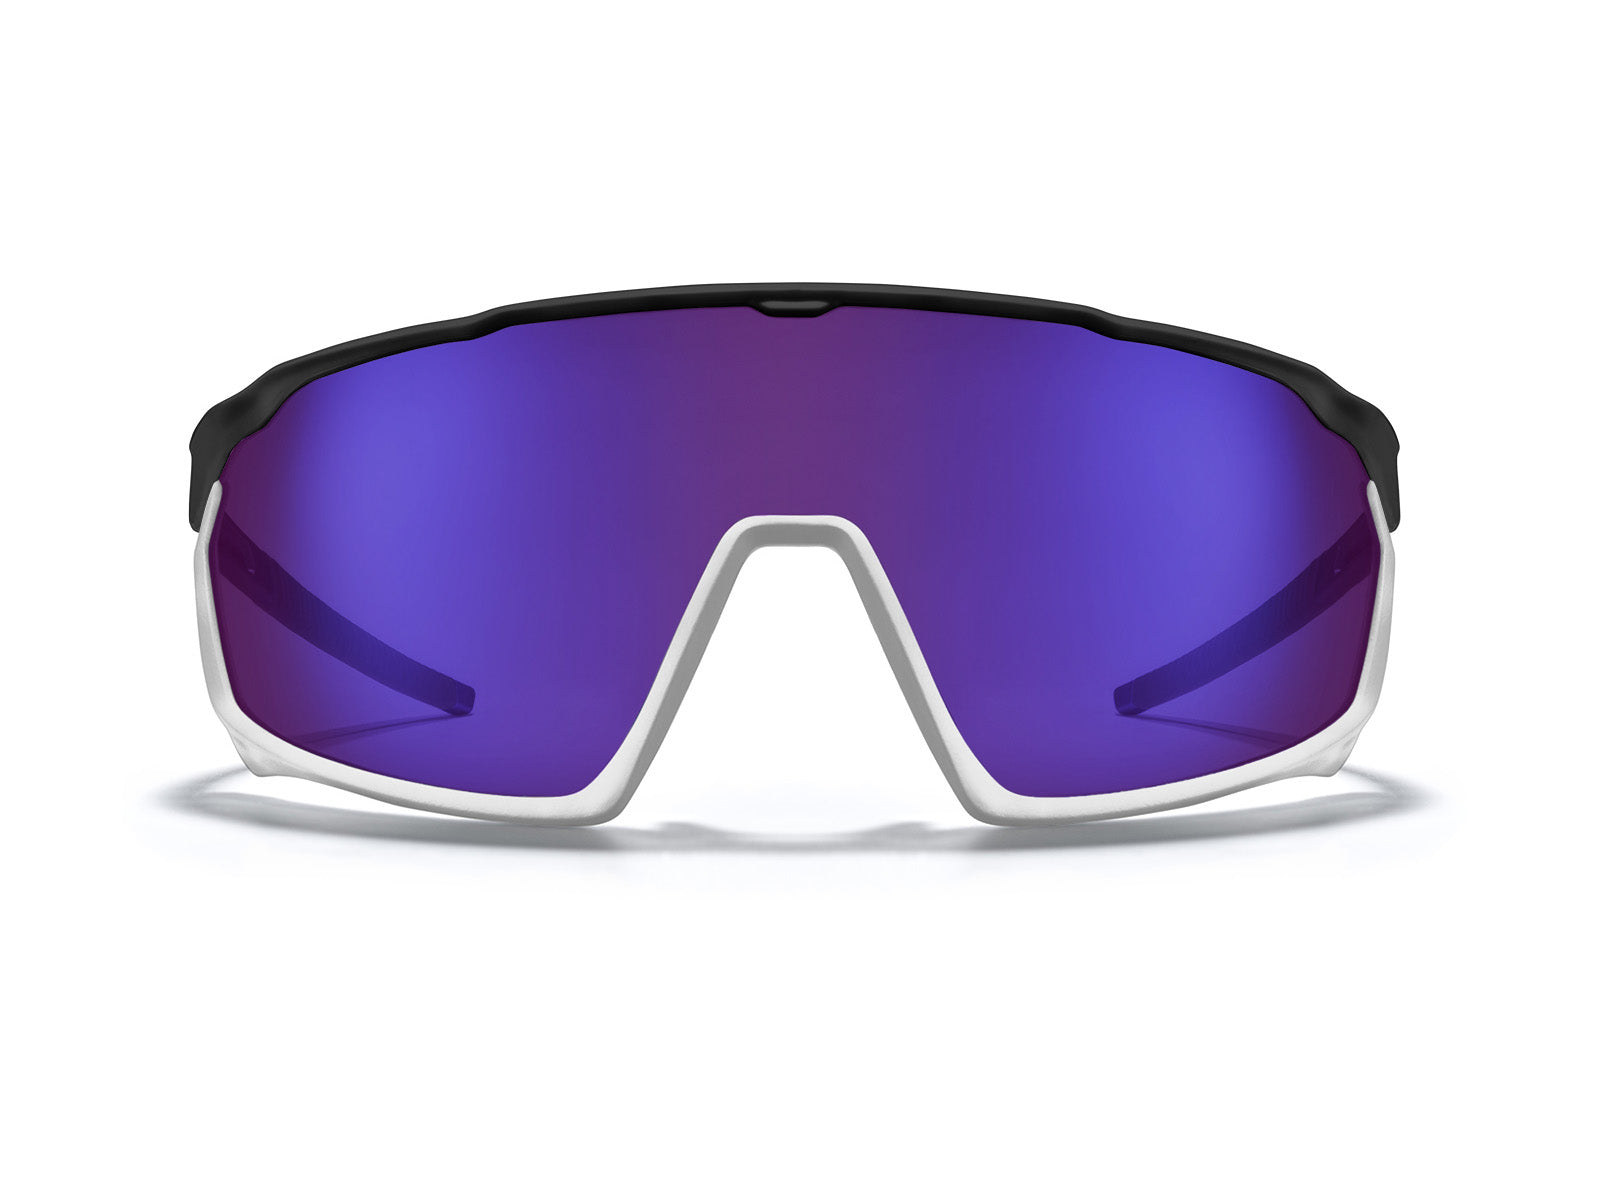 Matador Sports Sunglasses - Buy Online | ROKA